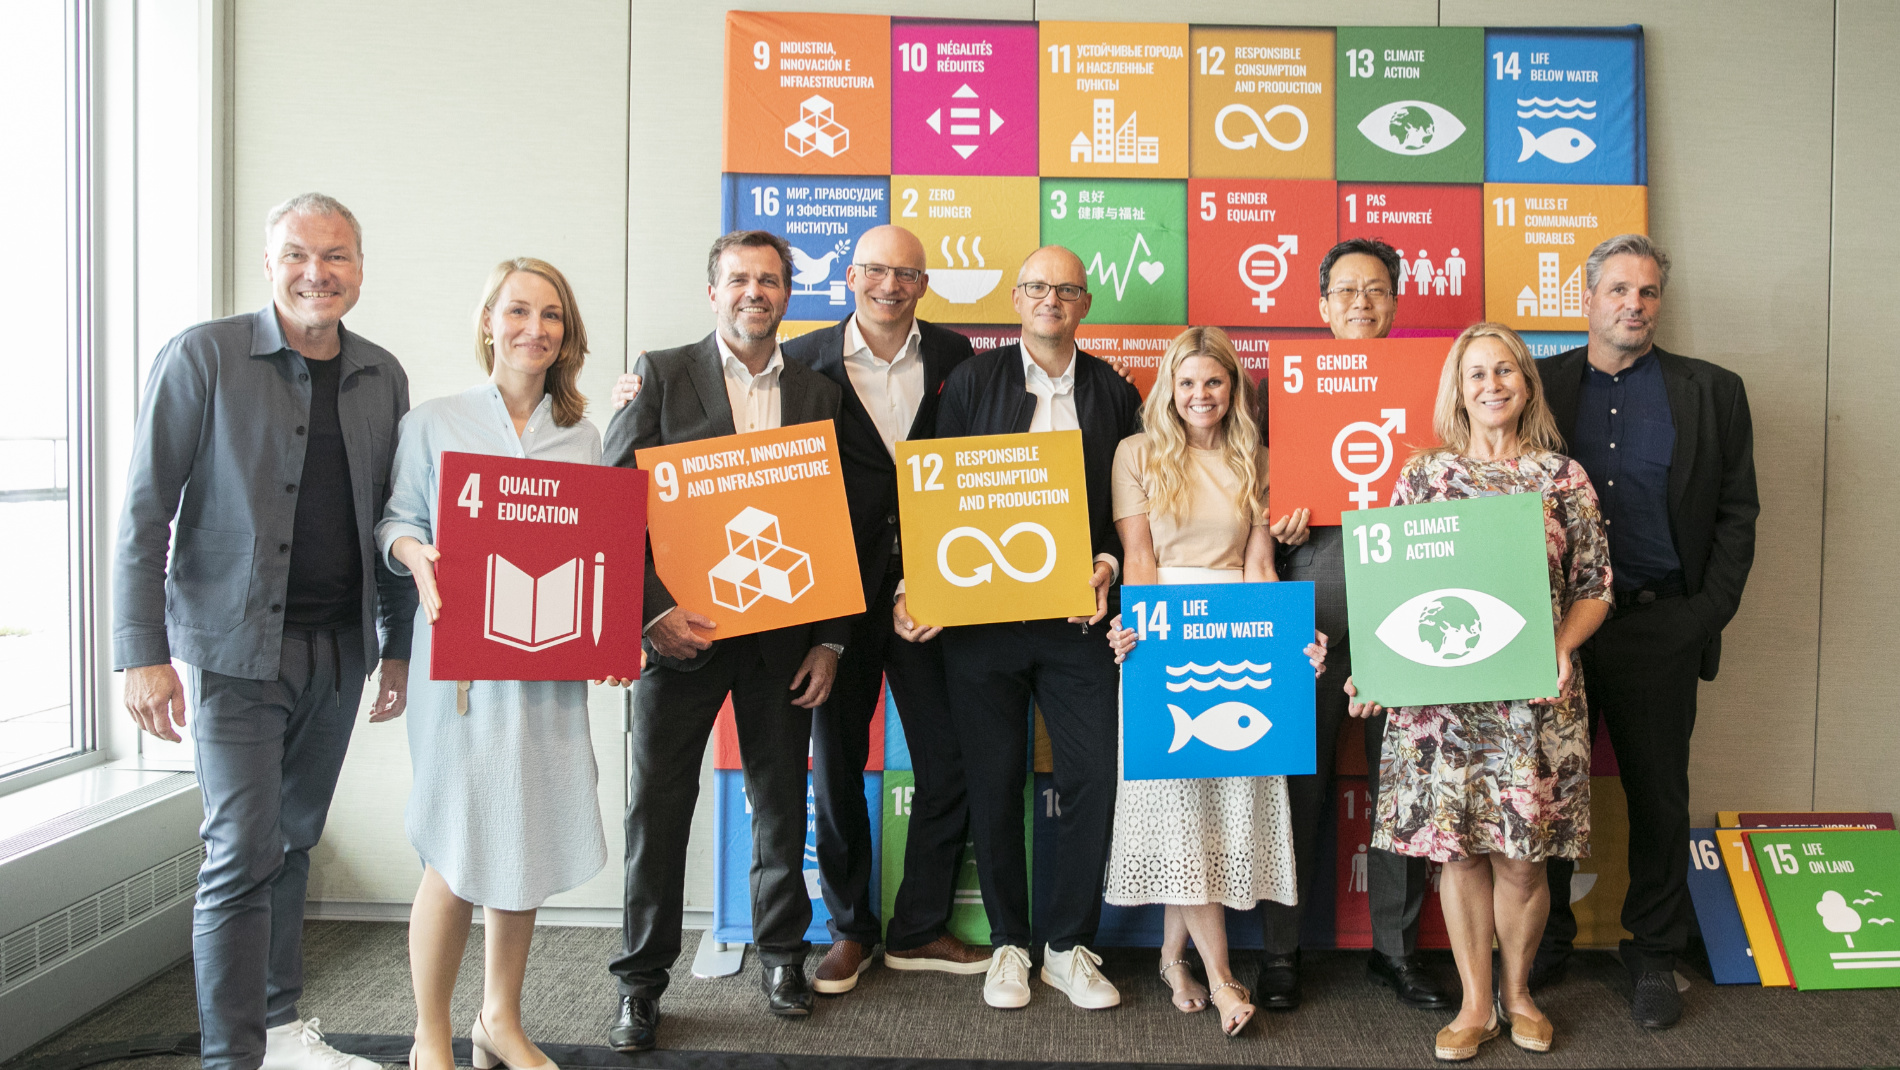 9 Personen vor einer SDG-Wand